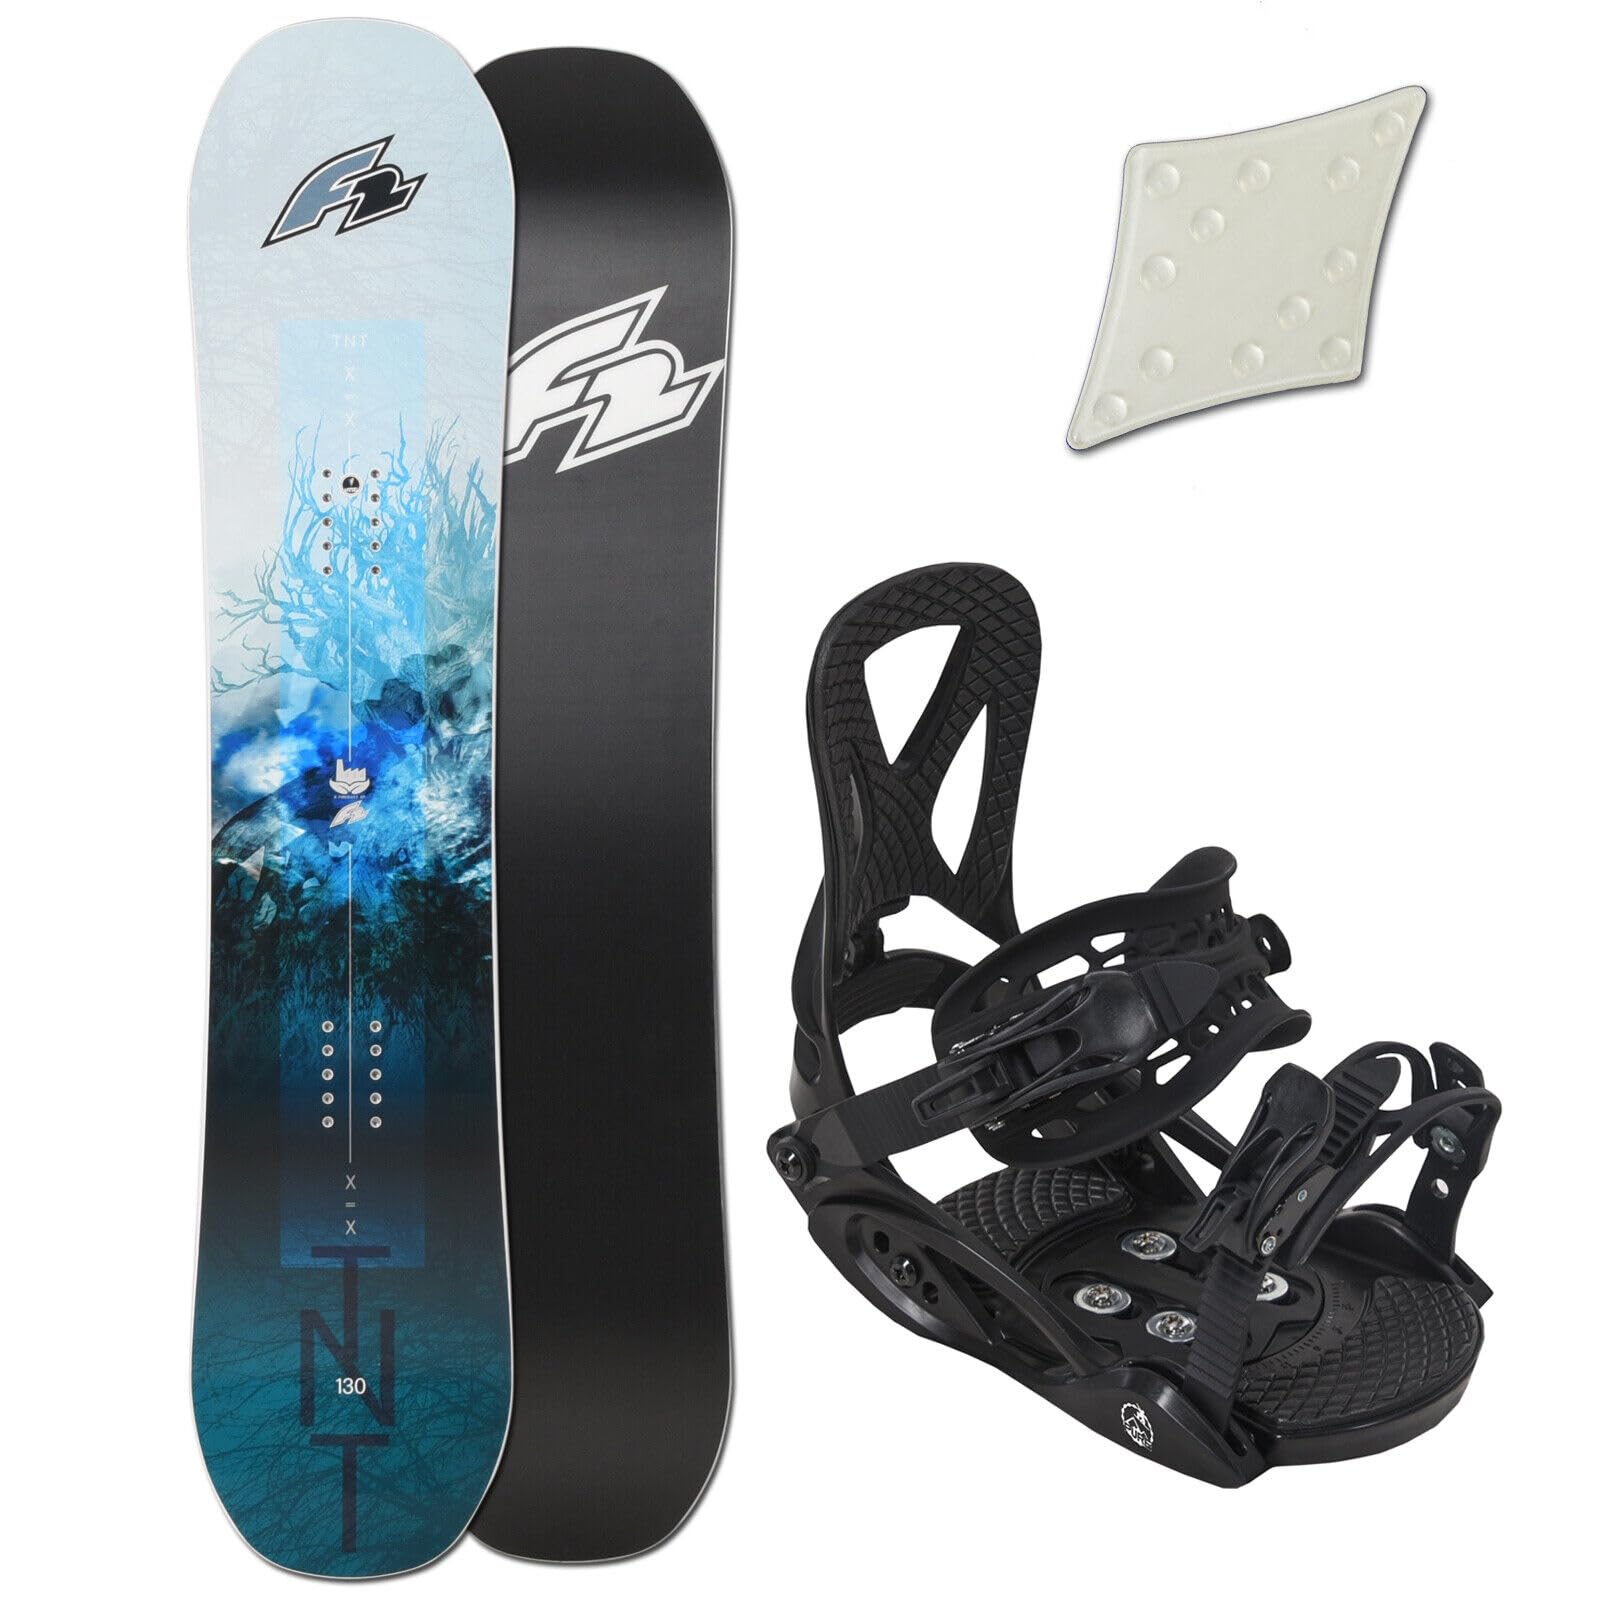 F2 TNT Kinder Snowboard Set - 125 cm + JUNIOR BINDUNG GR. S + PAD